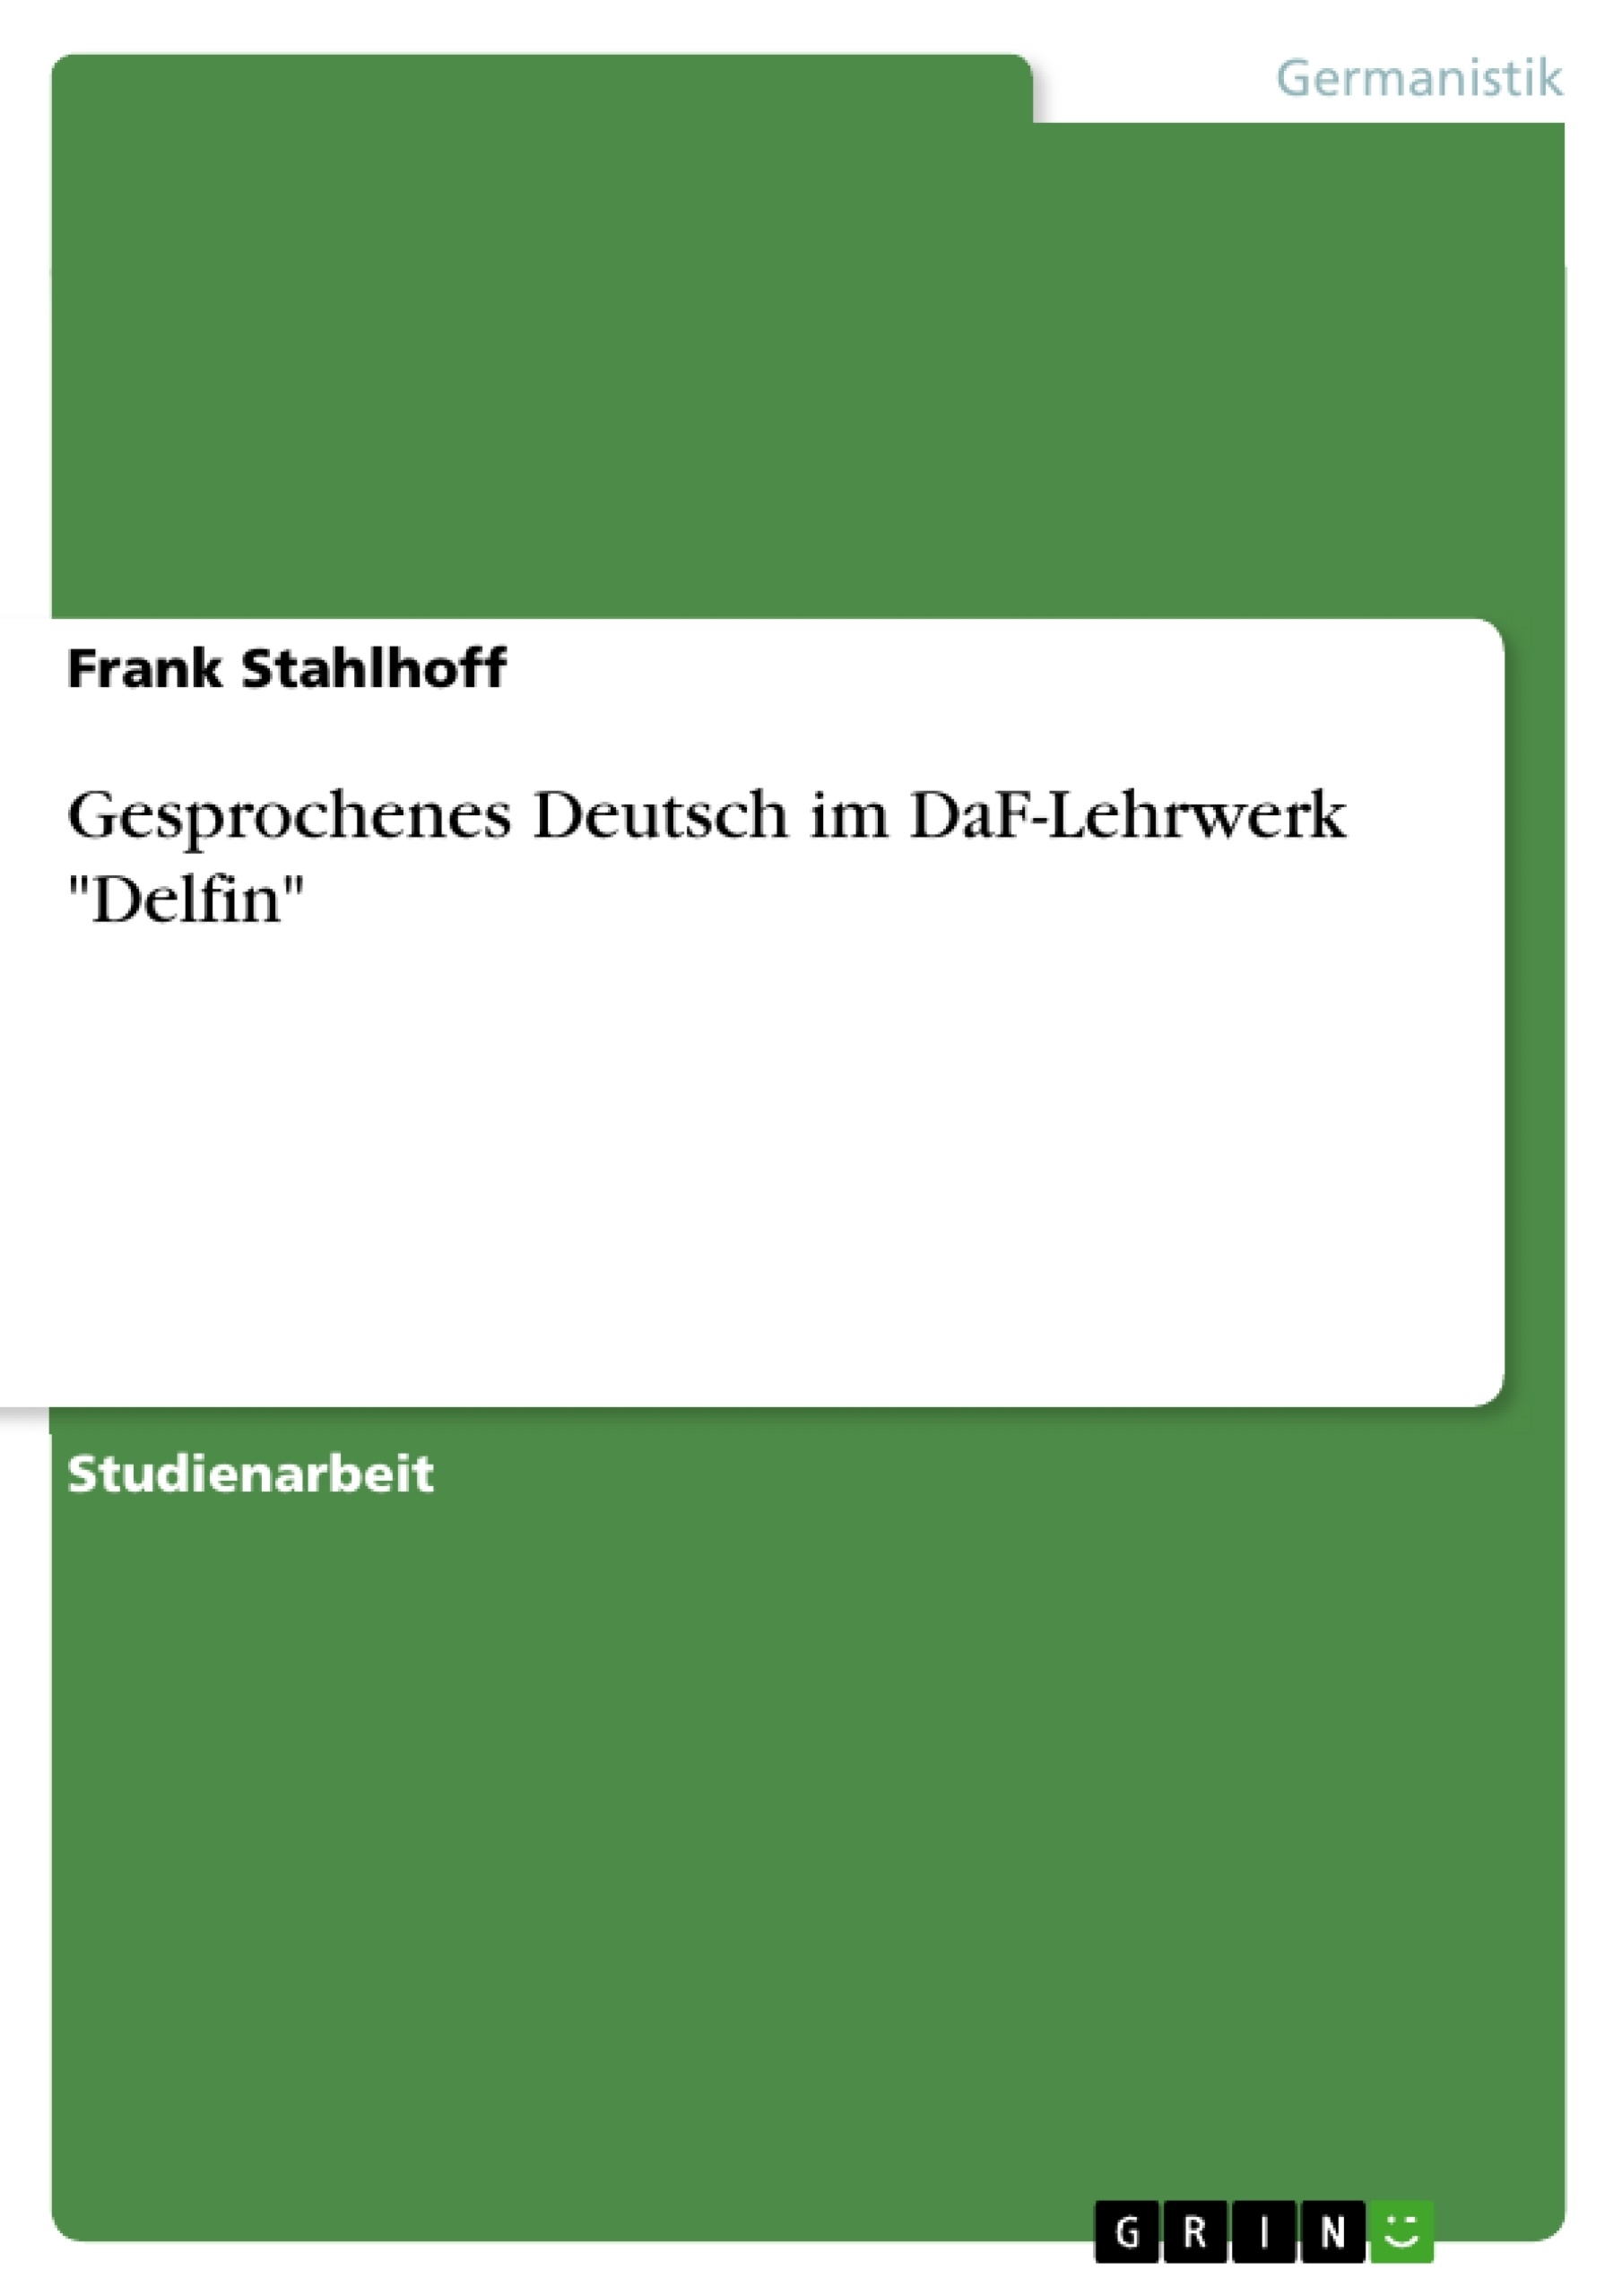 Title: Gesprochenes Deutsch im DaF-Lehrwerk "Delfin"